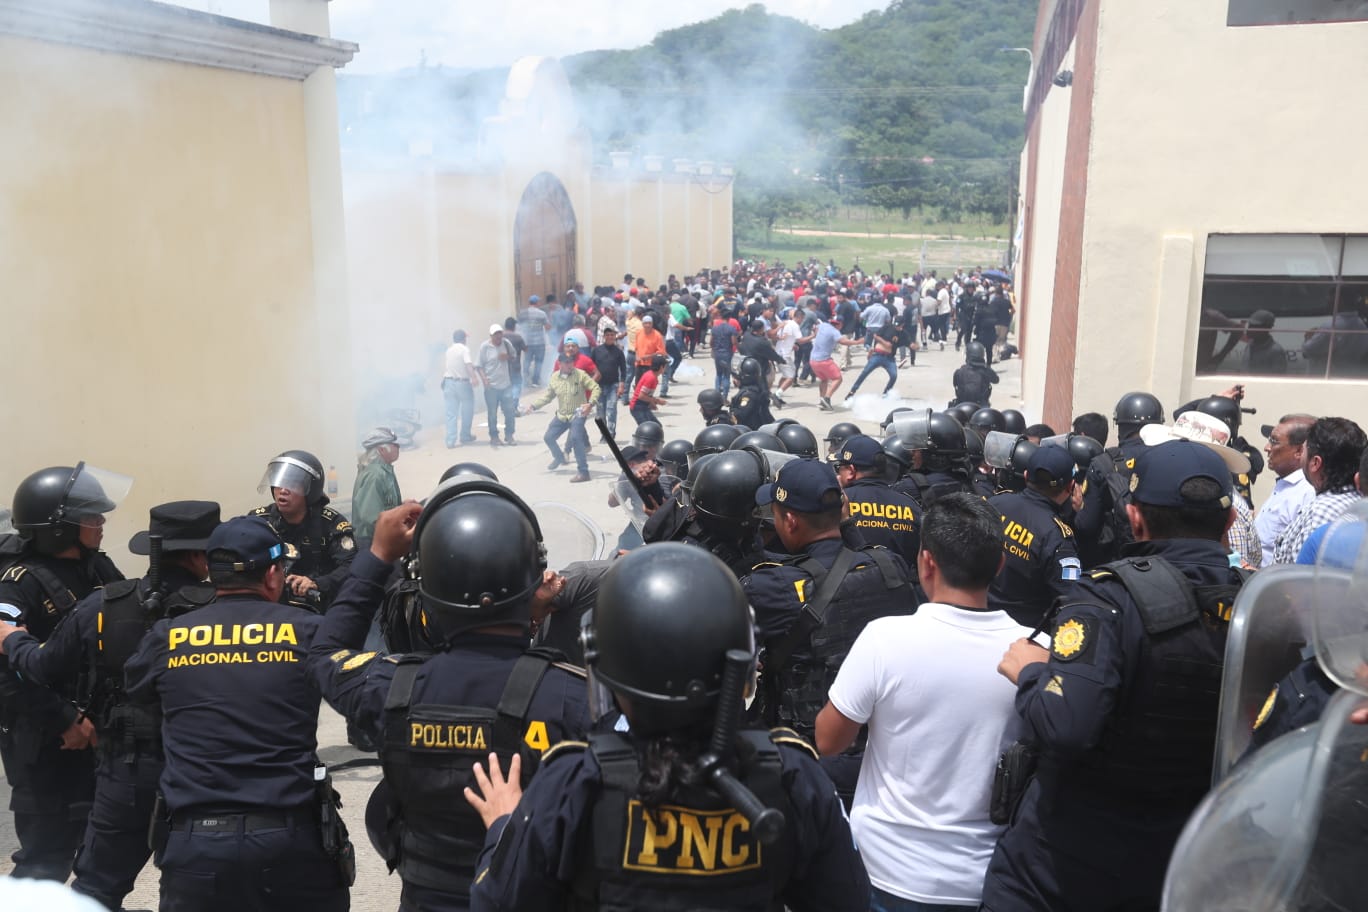 La jornada del domingo 25 de junio ha estado marcada por presencia policial y disturbios en San José del Golfo, en el departamento de Guatemala. (Foto Prensa Libre: Érick Ávila)